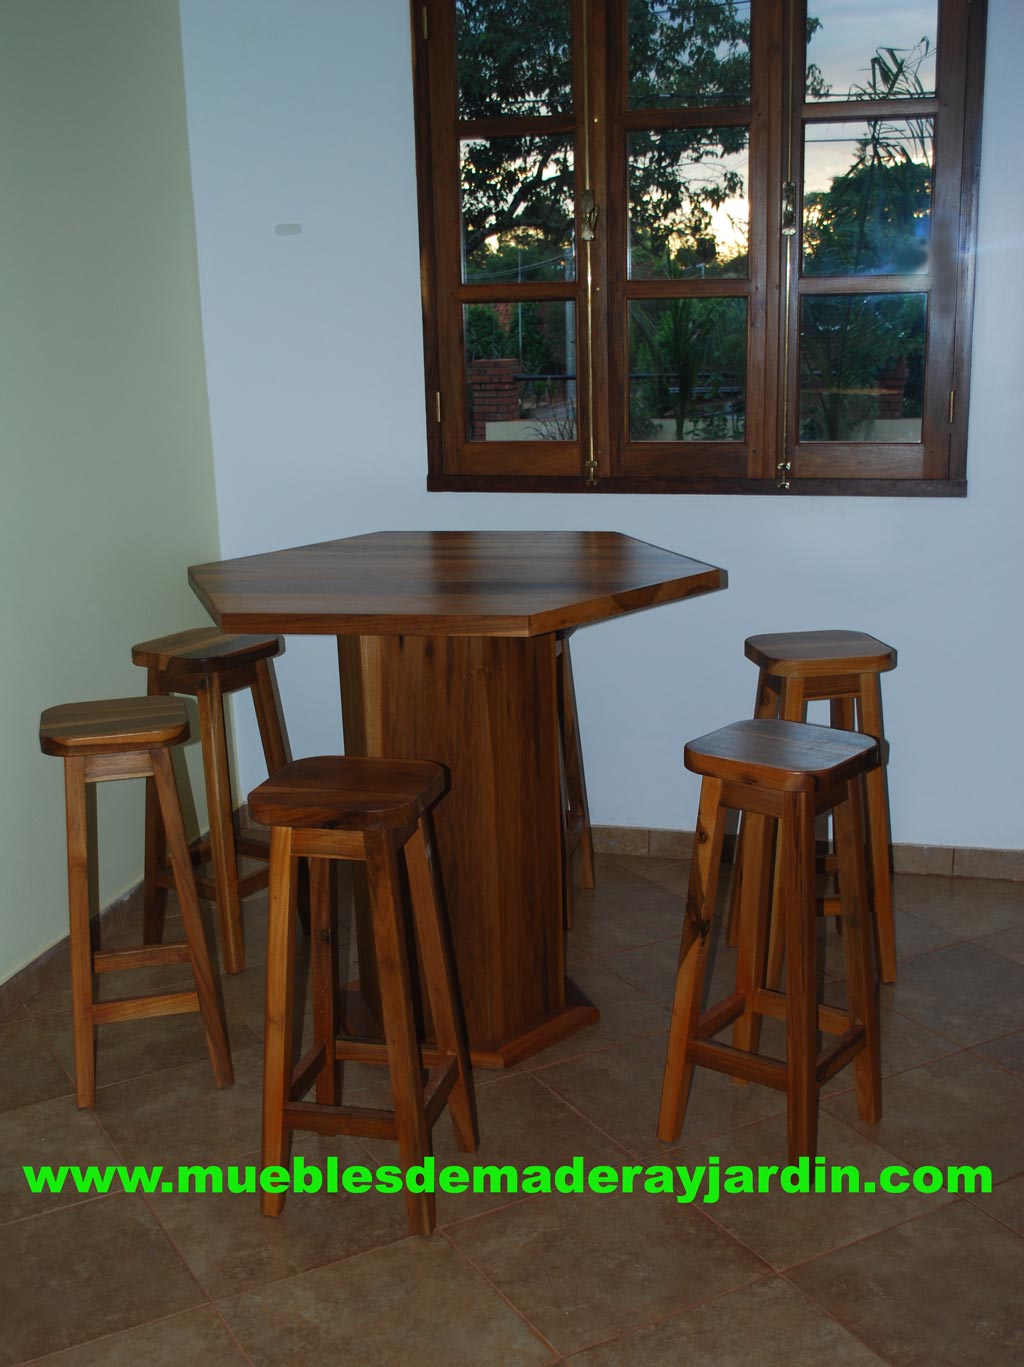 madera para barra o desayunador - El Blog de Muebles Madera y Jardin .COM